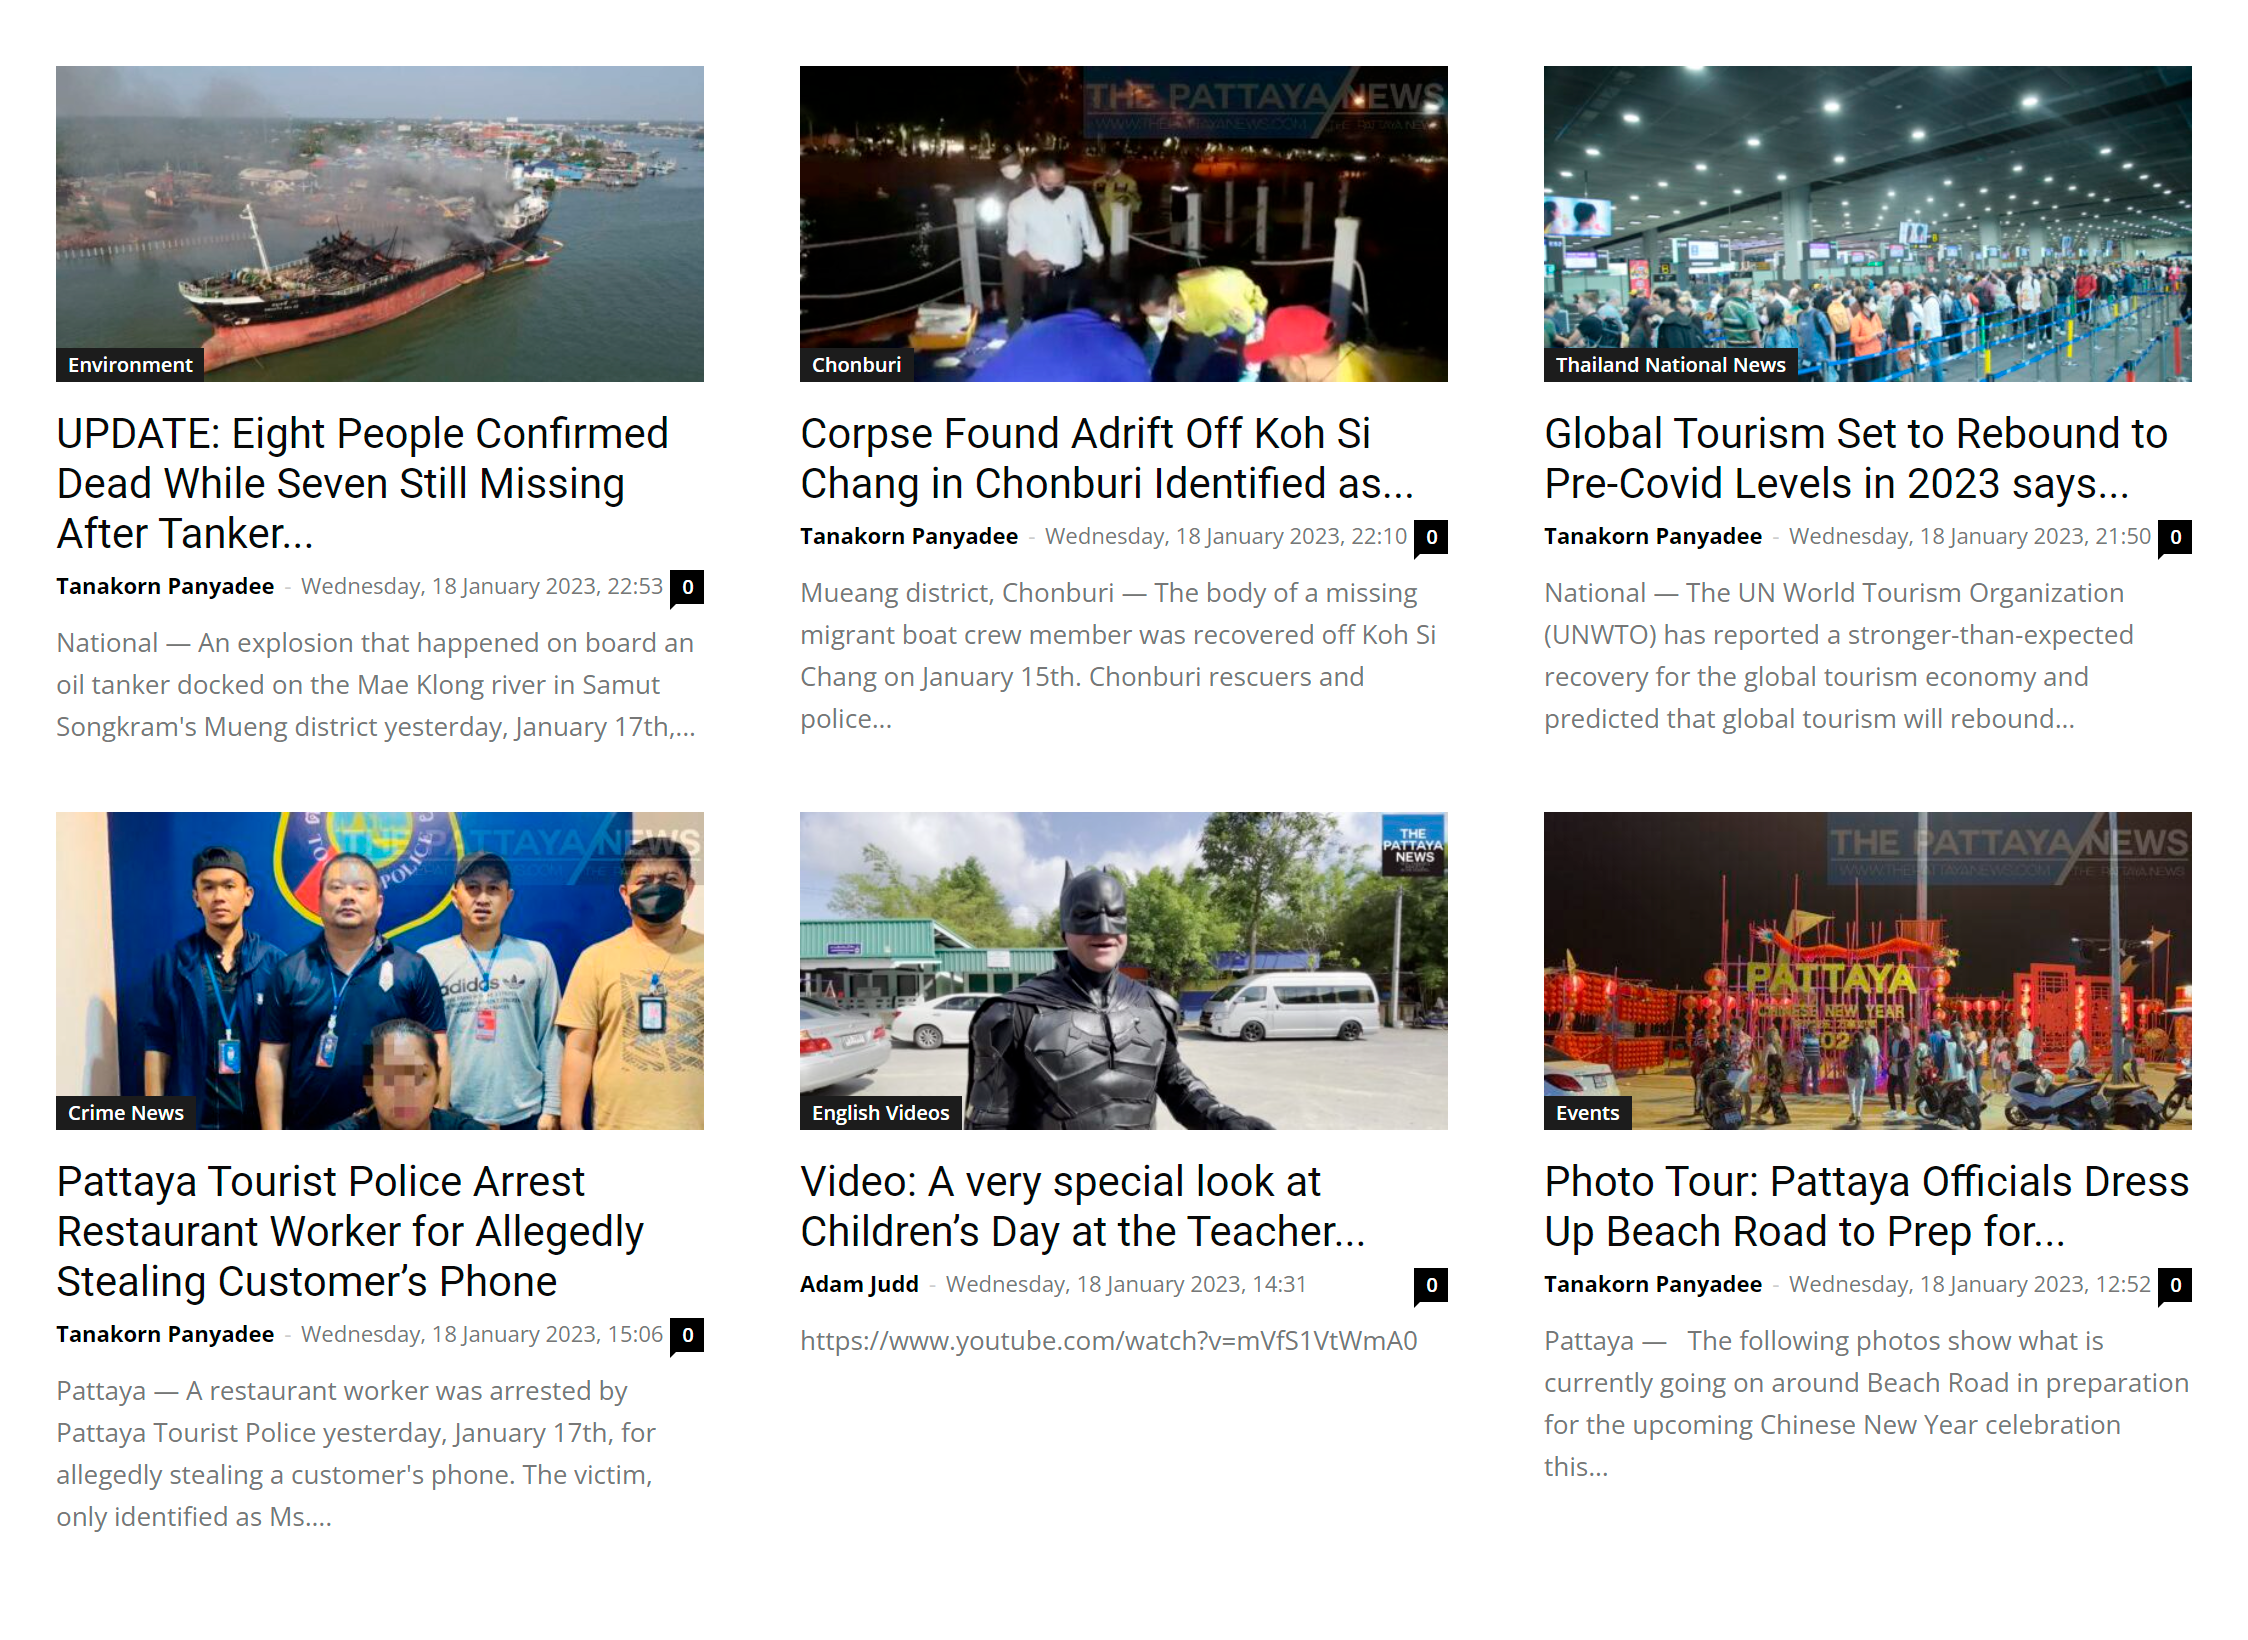 На сайте The Pattaya News есть и анонсы грядущих мероприятий, и новости города